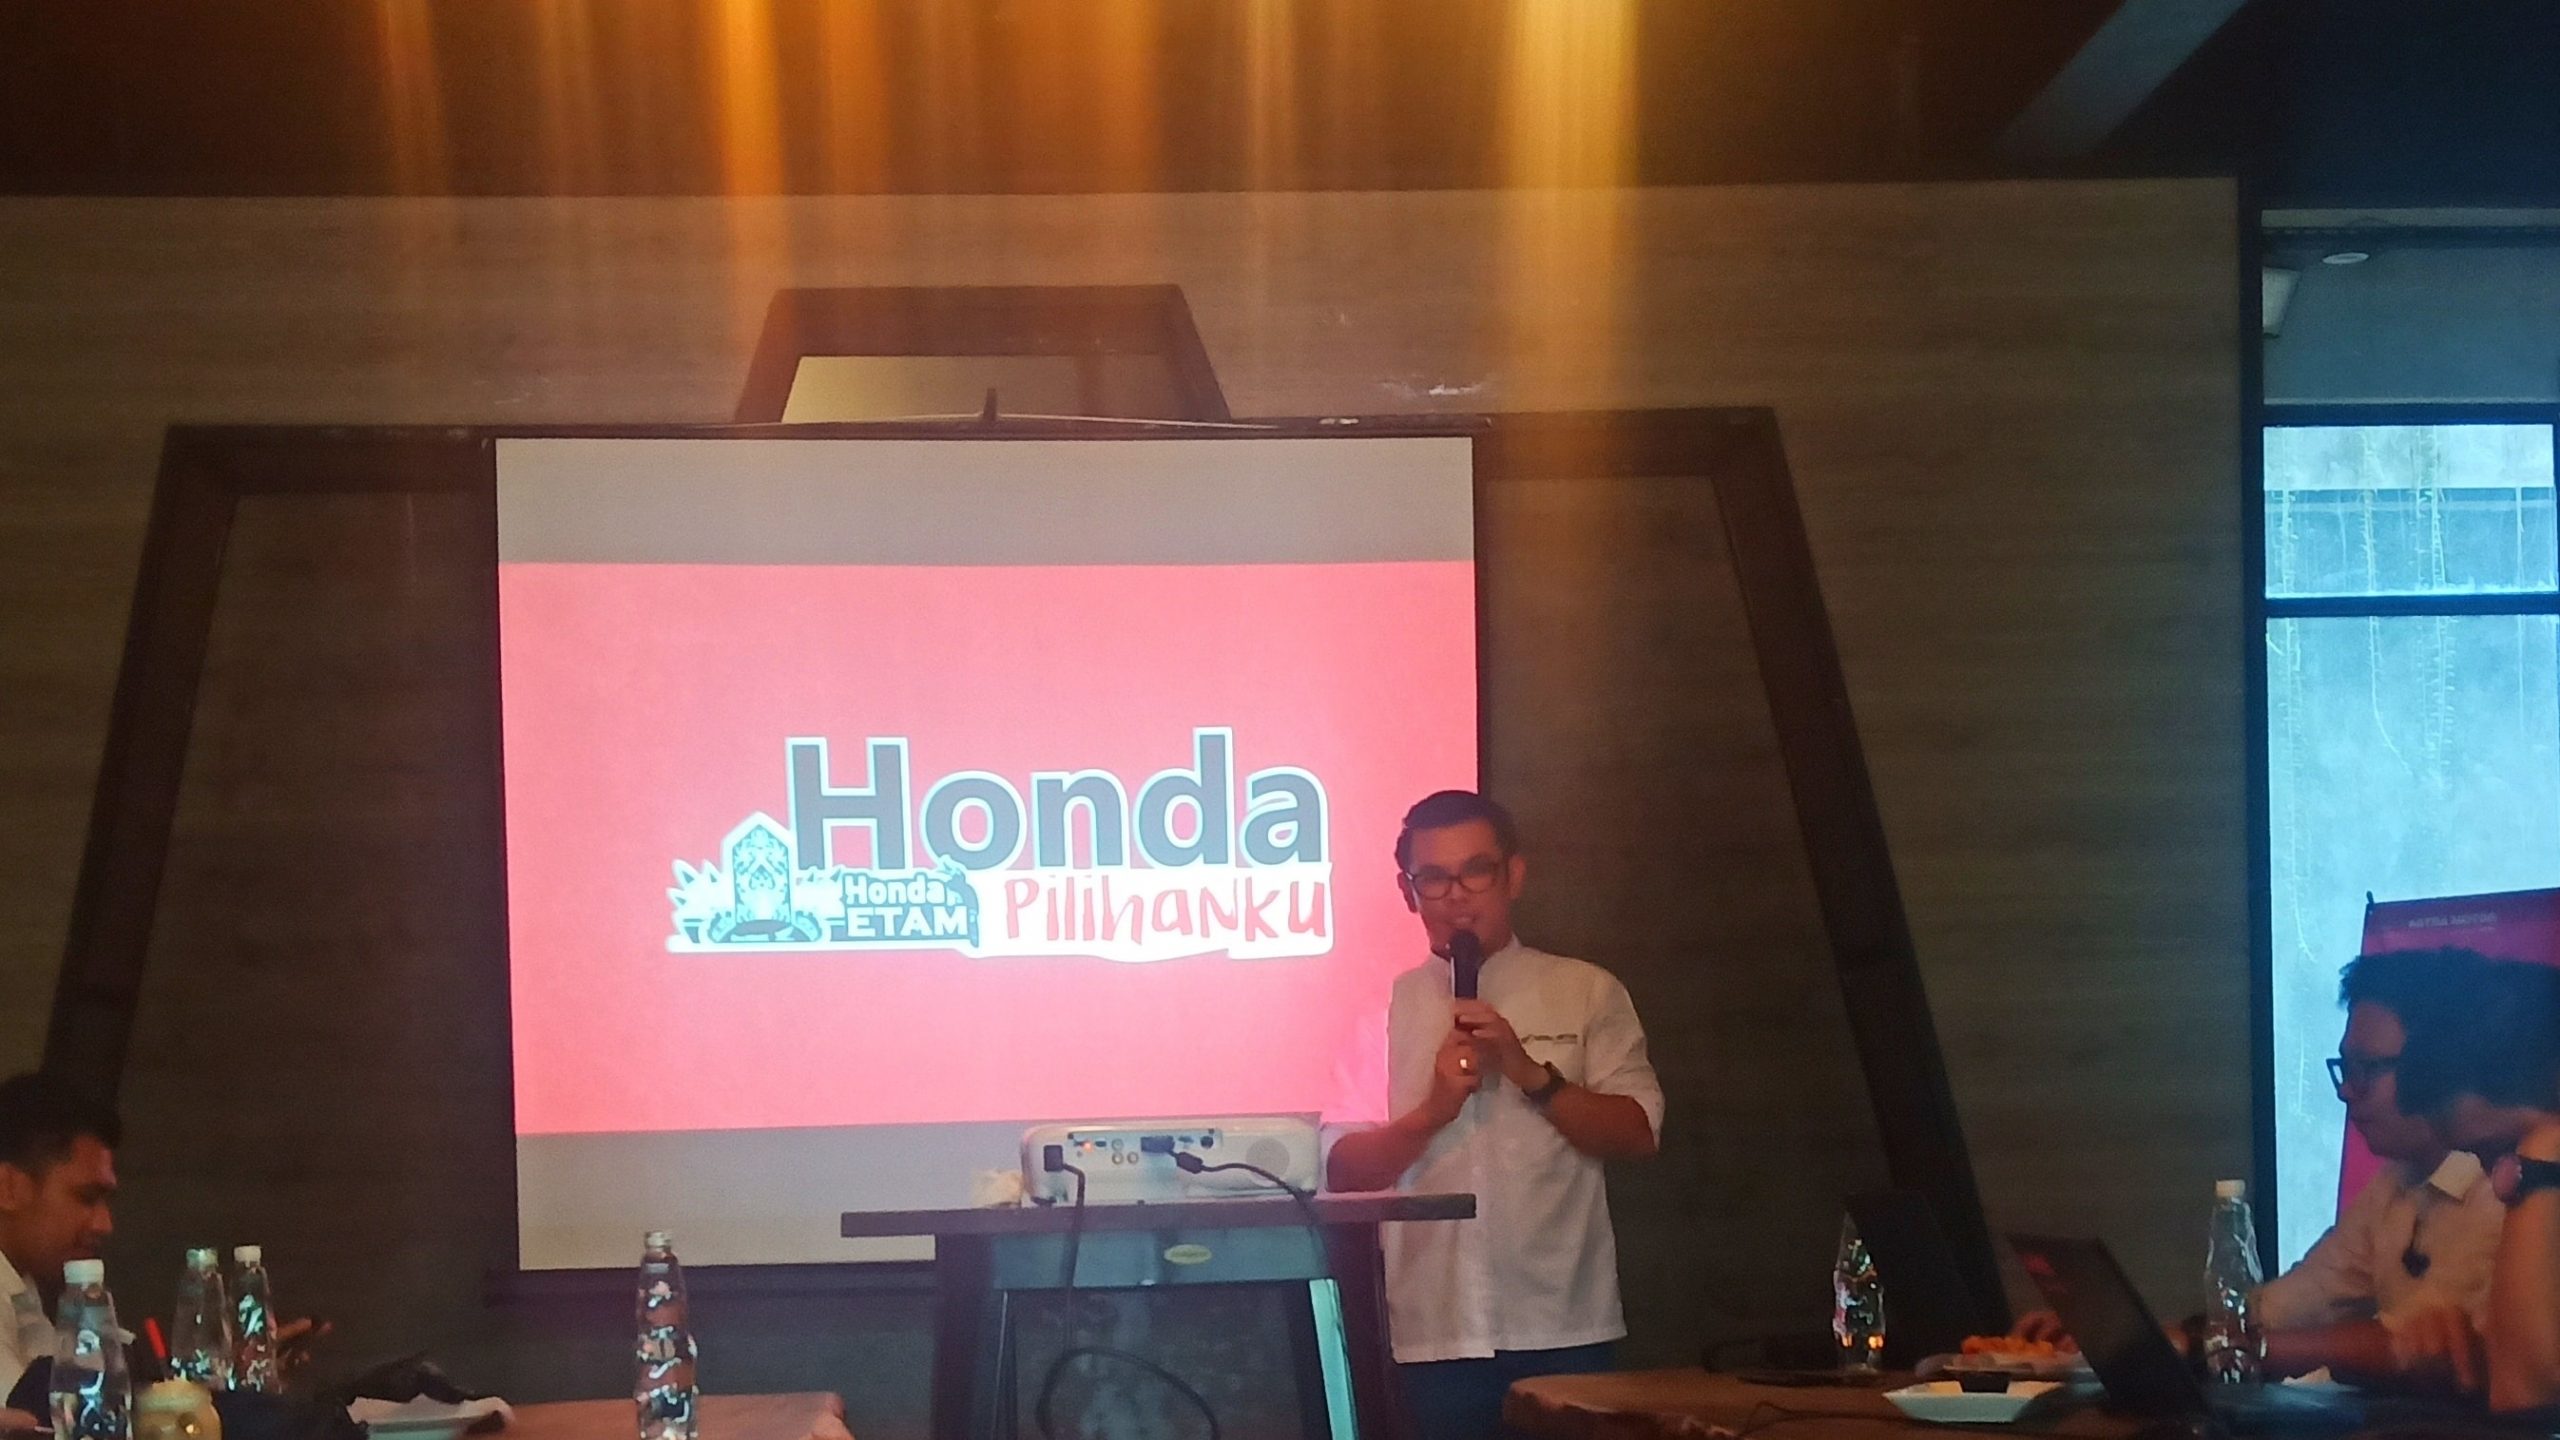 Honda Pilihanku